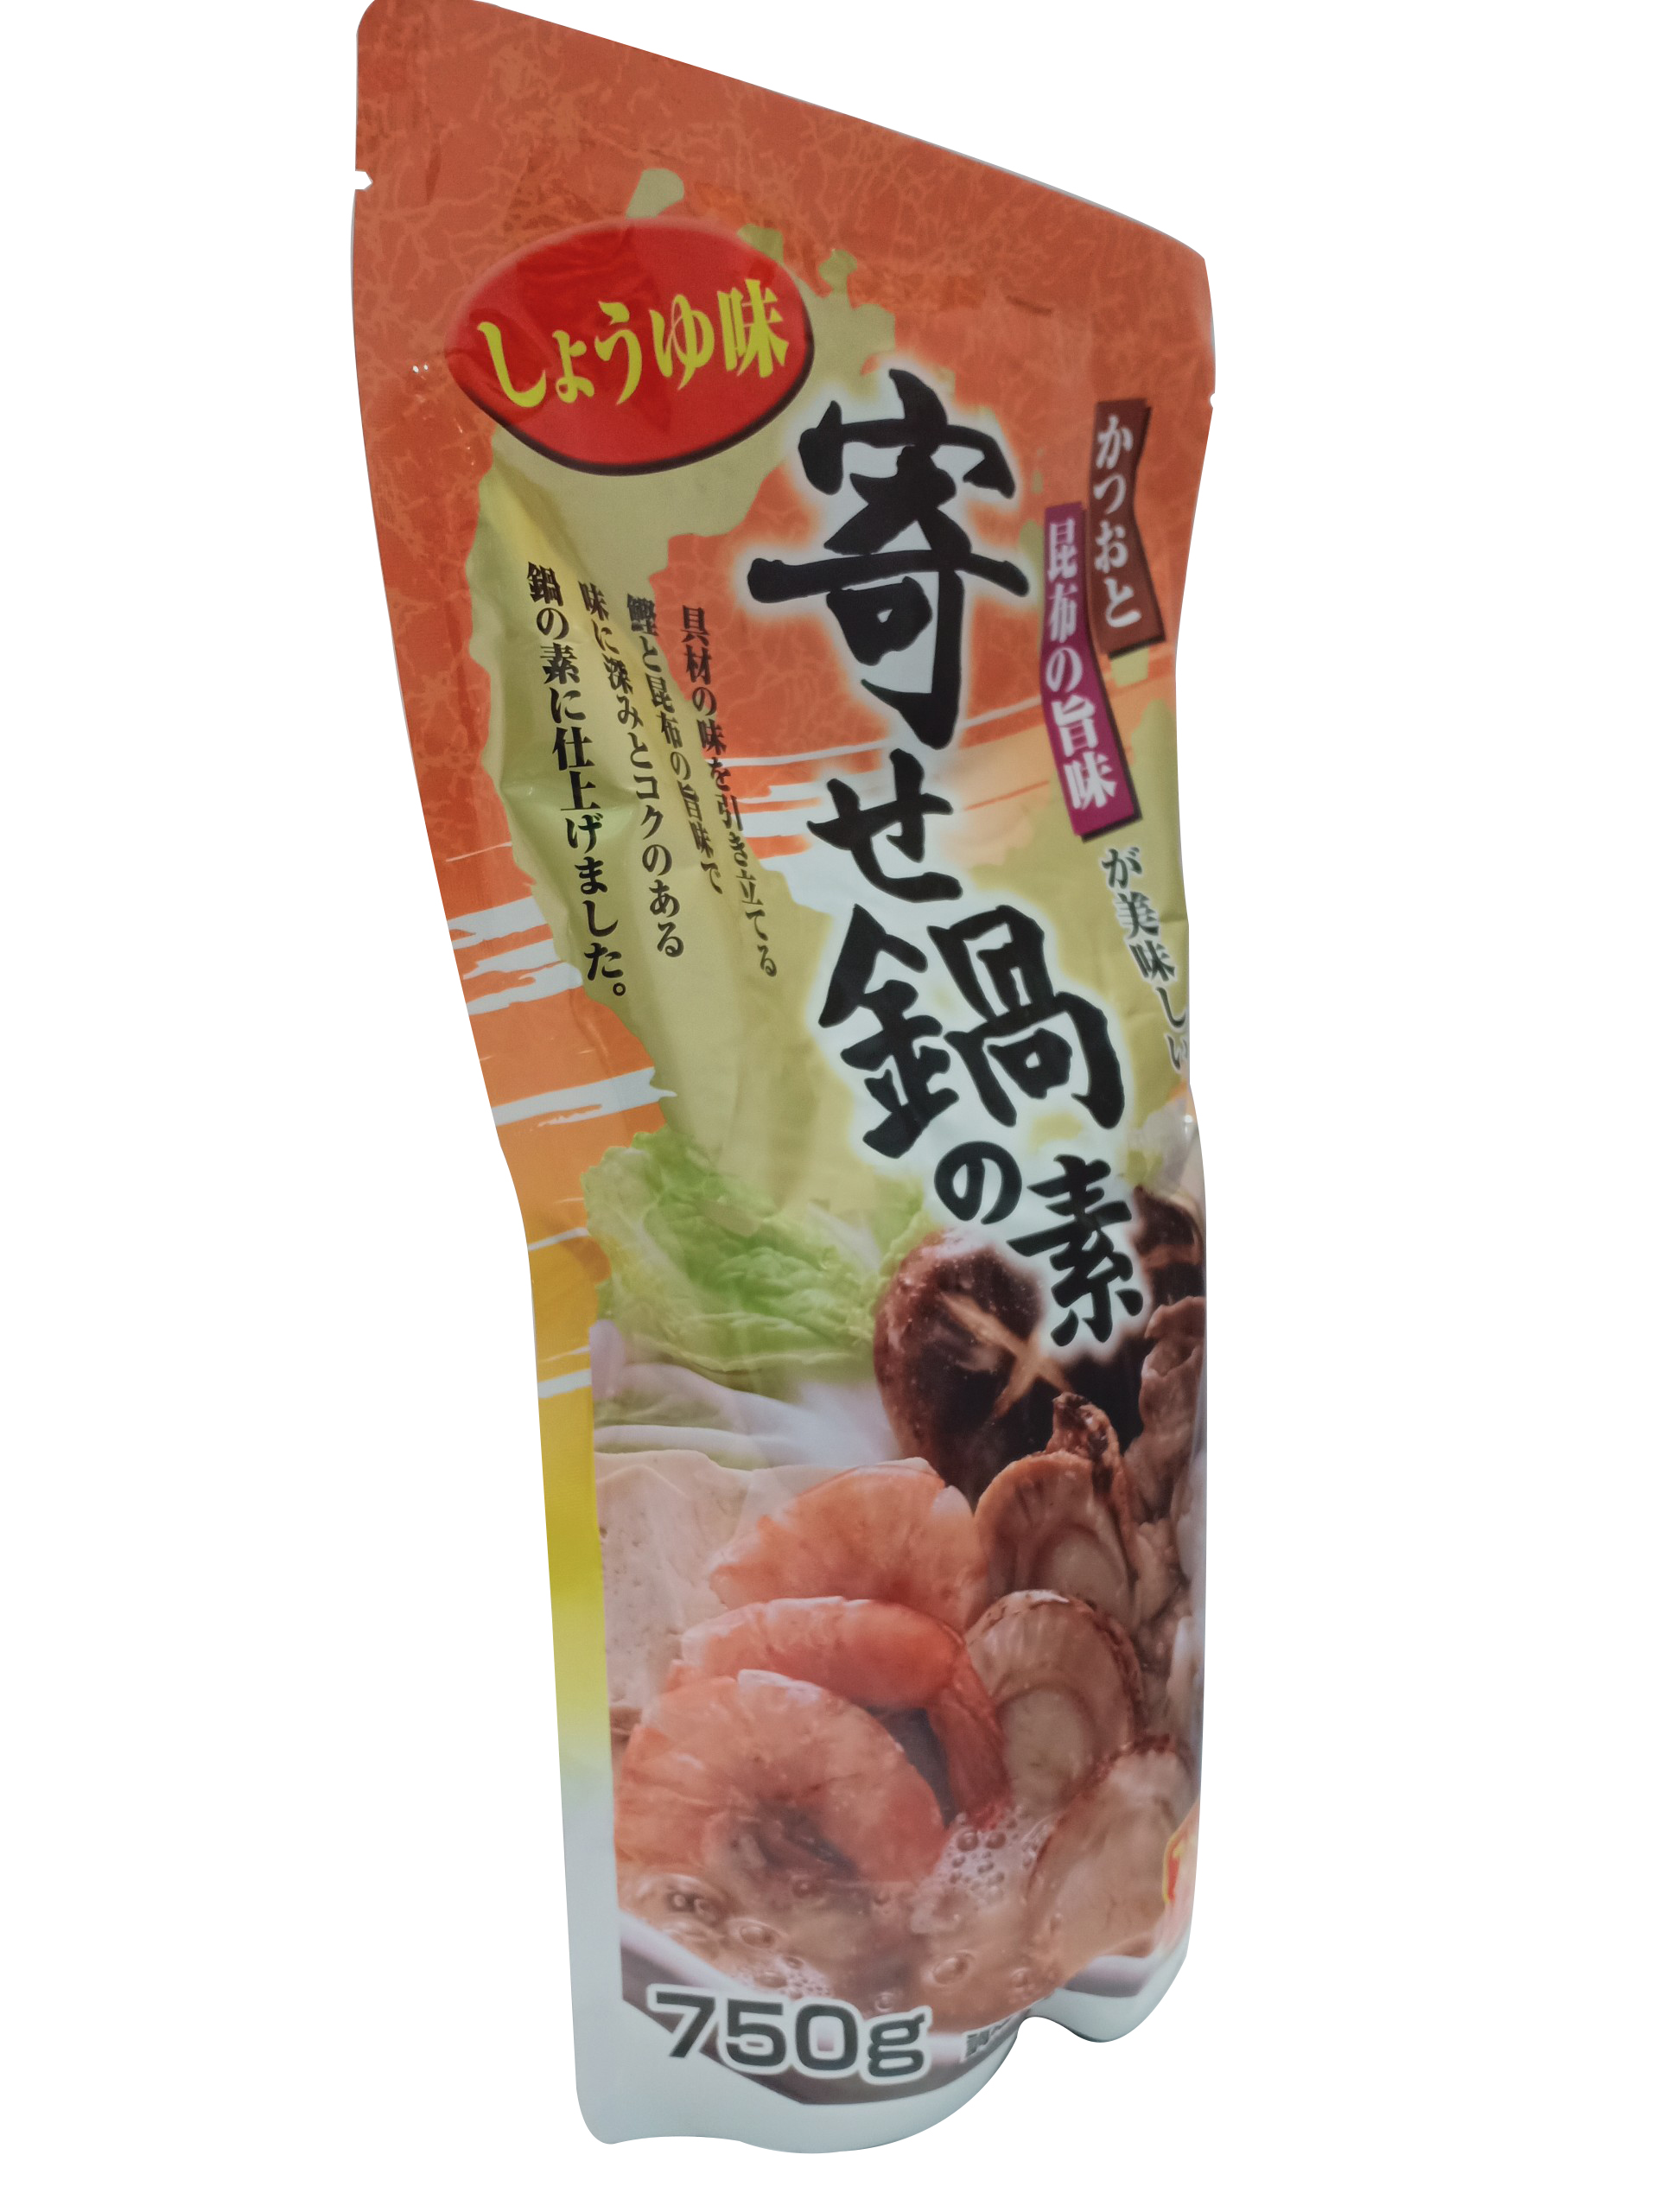 Nước súp lẩu vị hải sản T18 hàng nội địa Nhật Bản